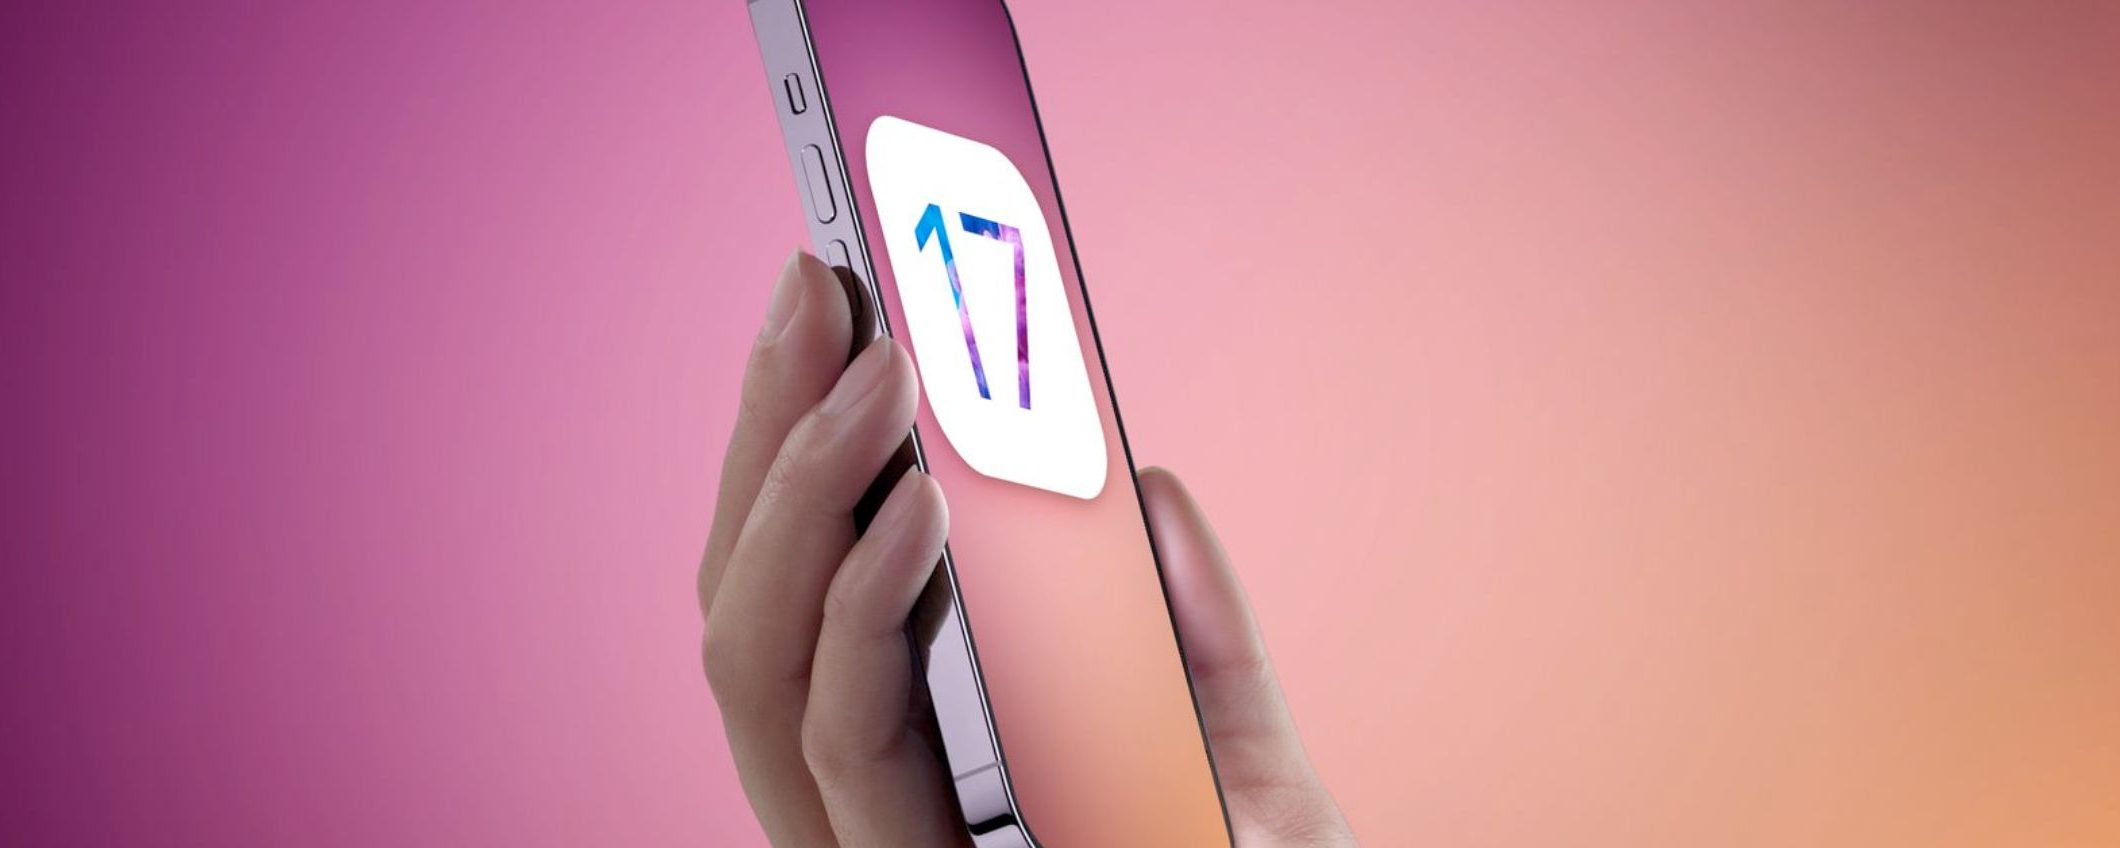 iOS 17: Apple rivela alcune grosse novità in arrivo con l'aggiornamento